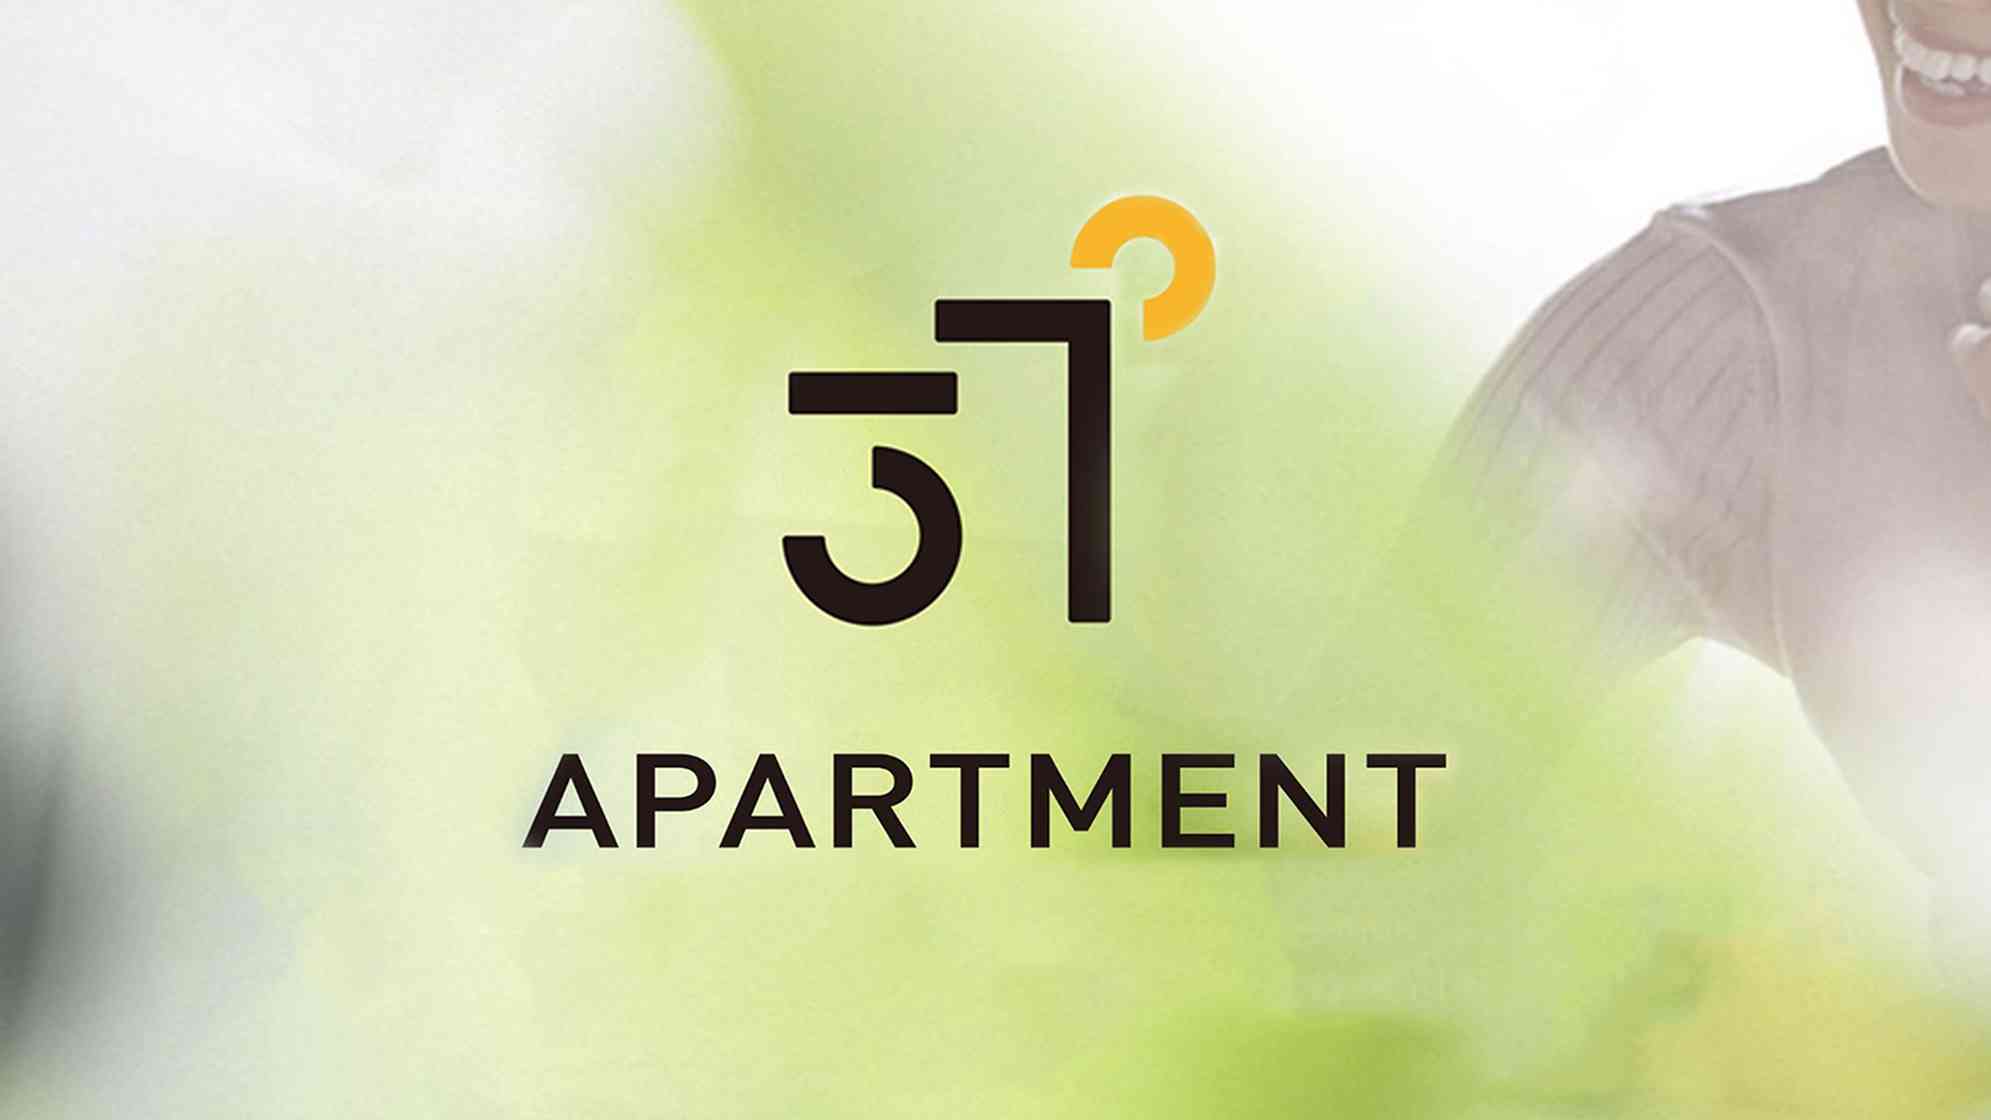 37度公寓logo设计图片素材